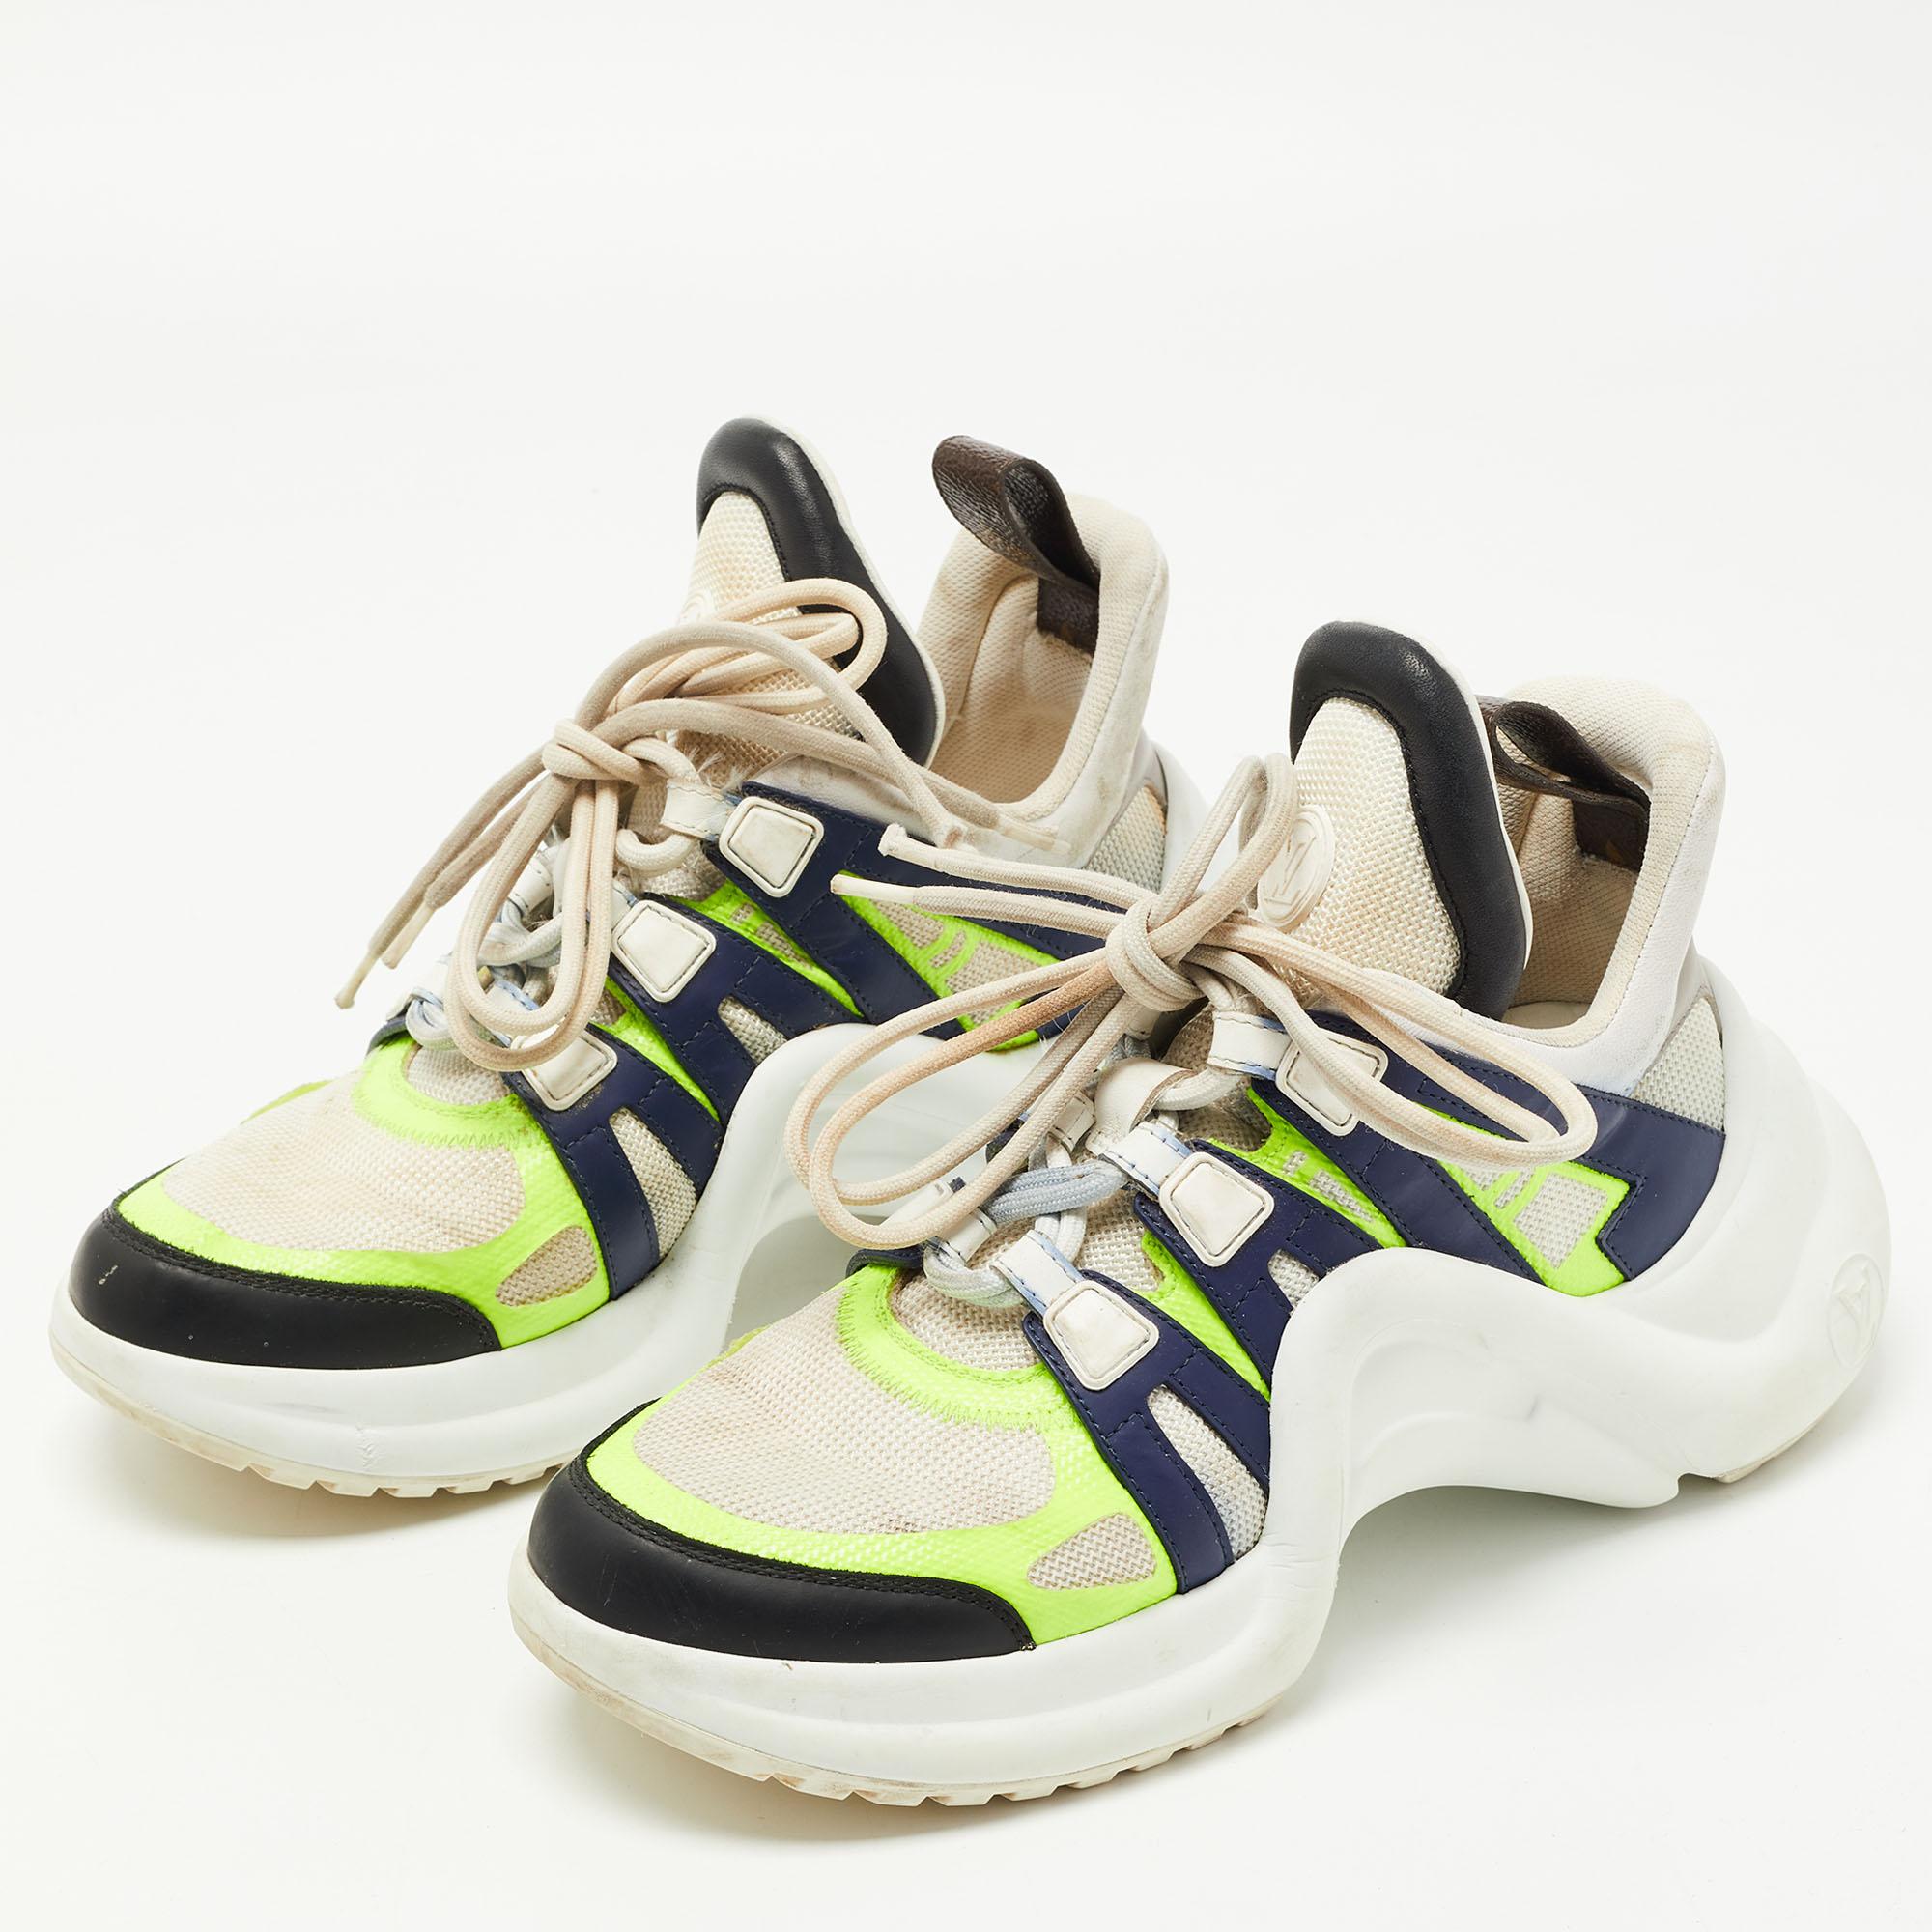 Louis Vuitton Khaki Green Mat Rubber Archlight Sneaker Boot Size